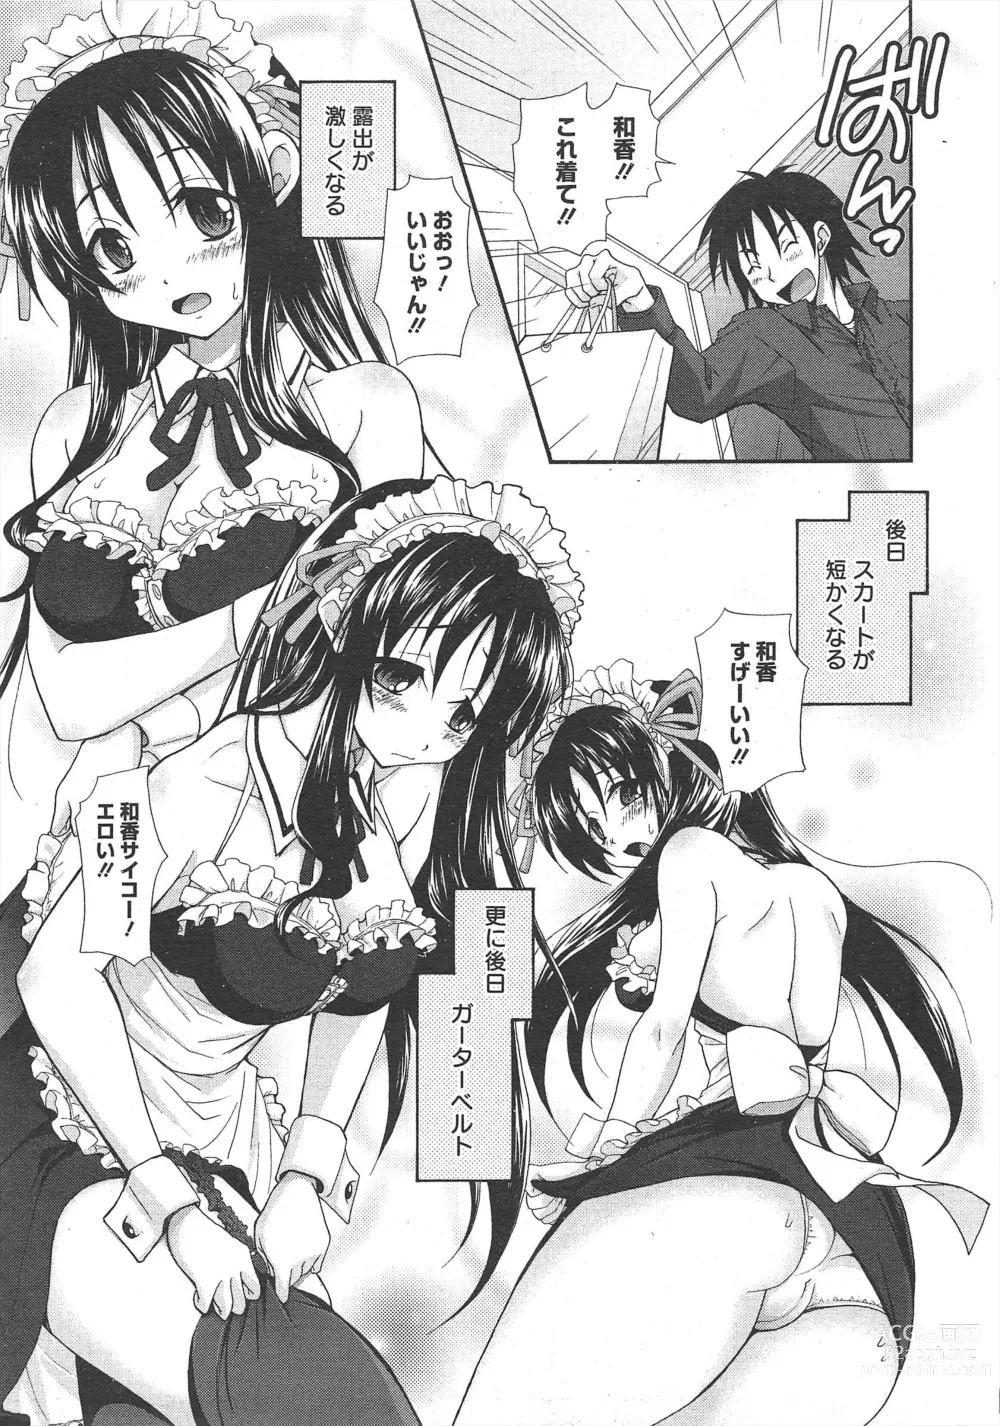 Page 11 of manga Manga Bangaichi 2011-08